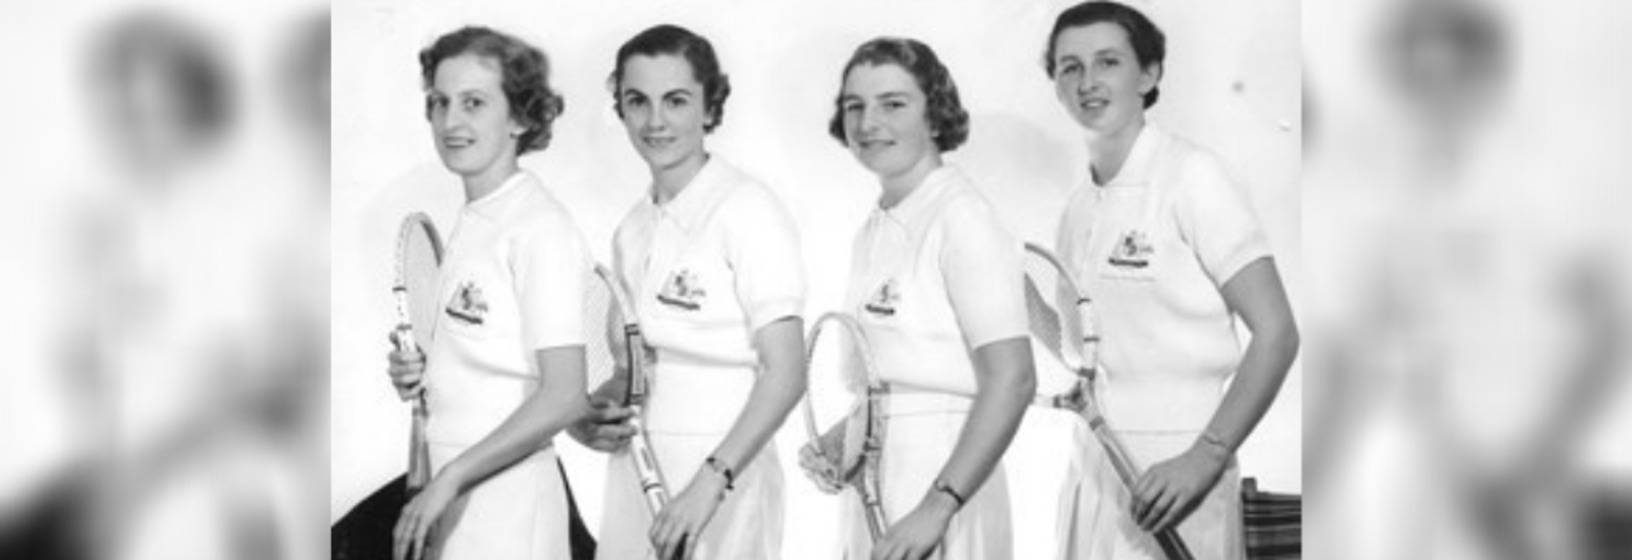 Australian Women’s Tennis team in uniform standing side by side